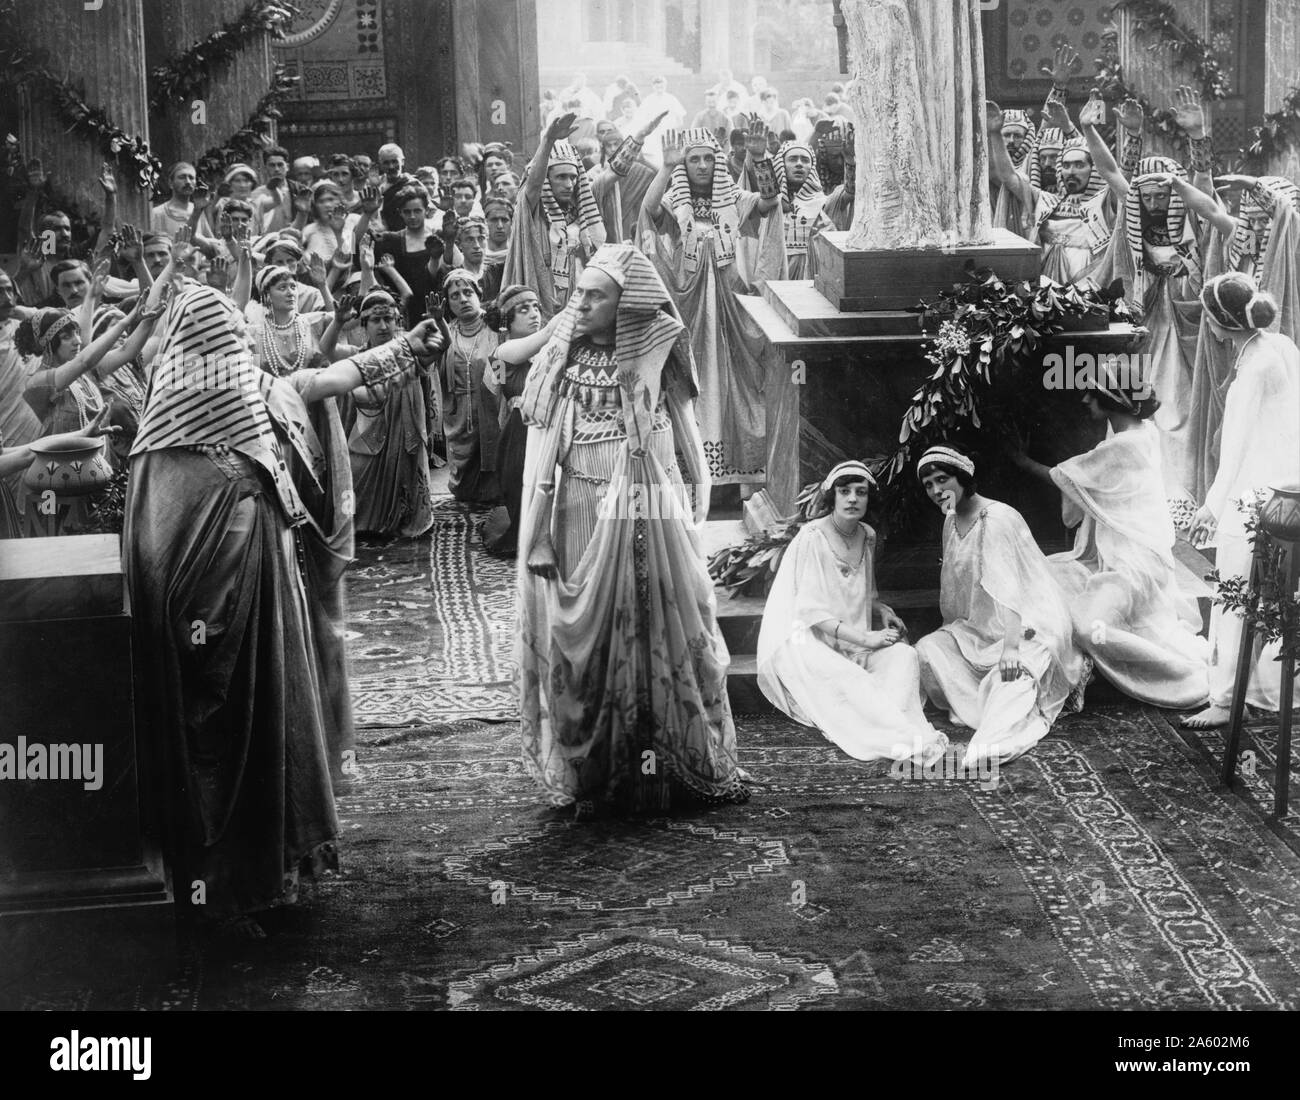 Scena del film muto, gli ultimi giorni di Pompei; 1913. Mostra i sacerdoti e i cittadini adorare una statua. Diretto da Mario Caserini Foto Stock